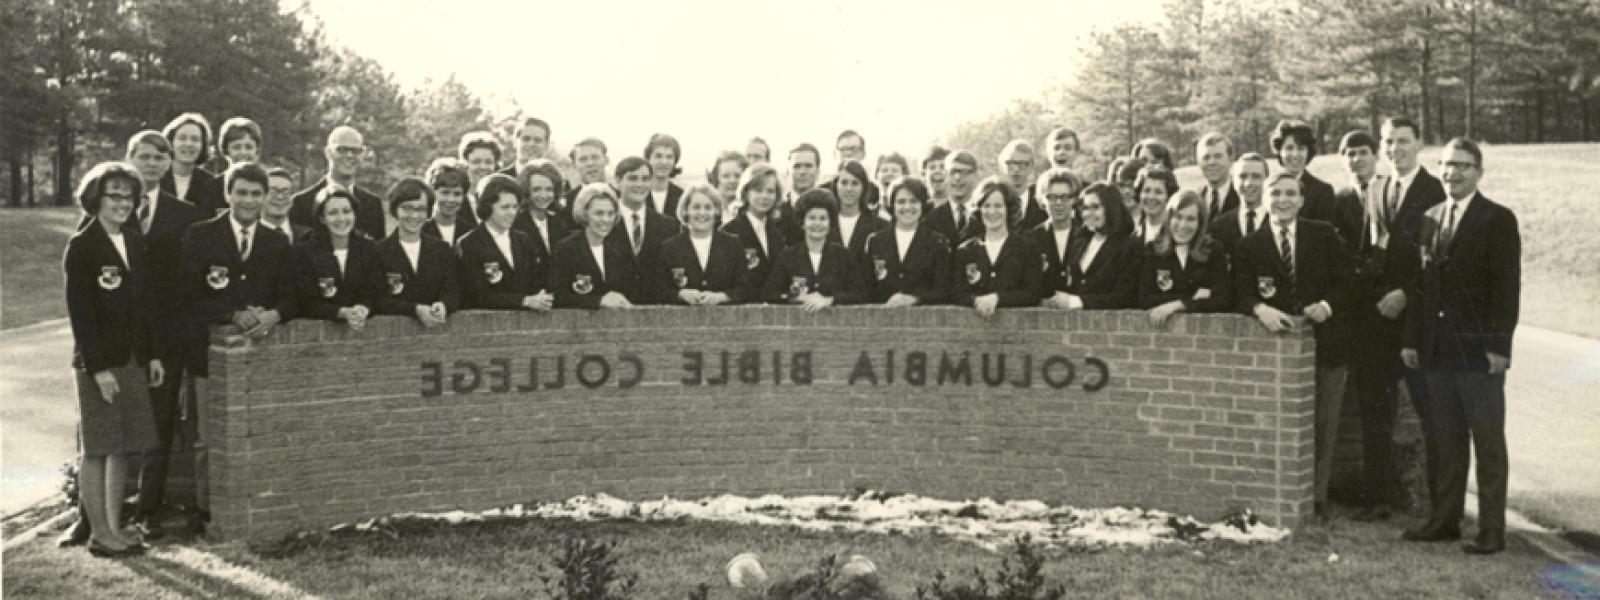 哥伦比亚圣经学院大使合唱团- 60年代末